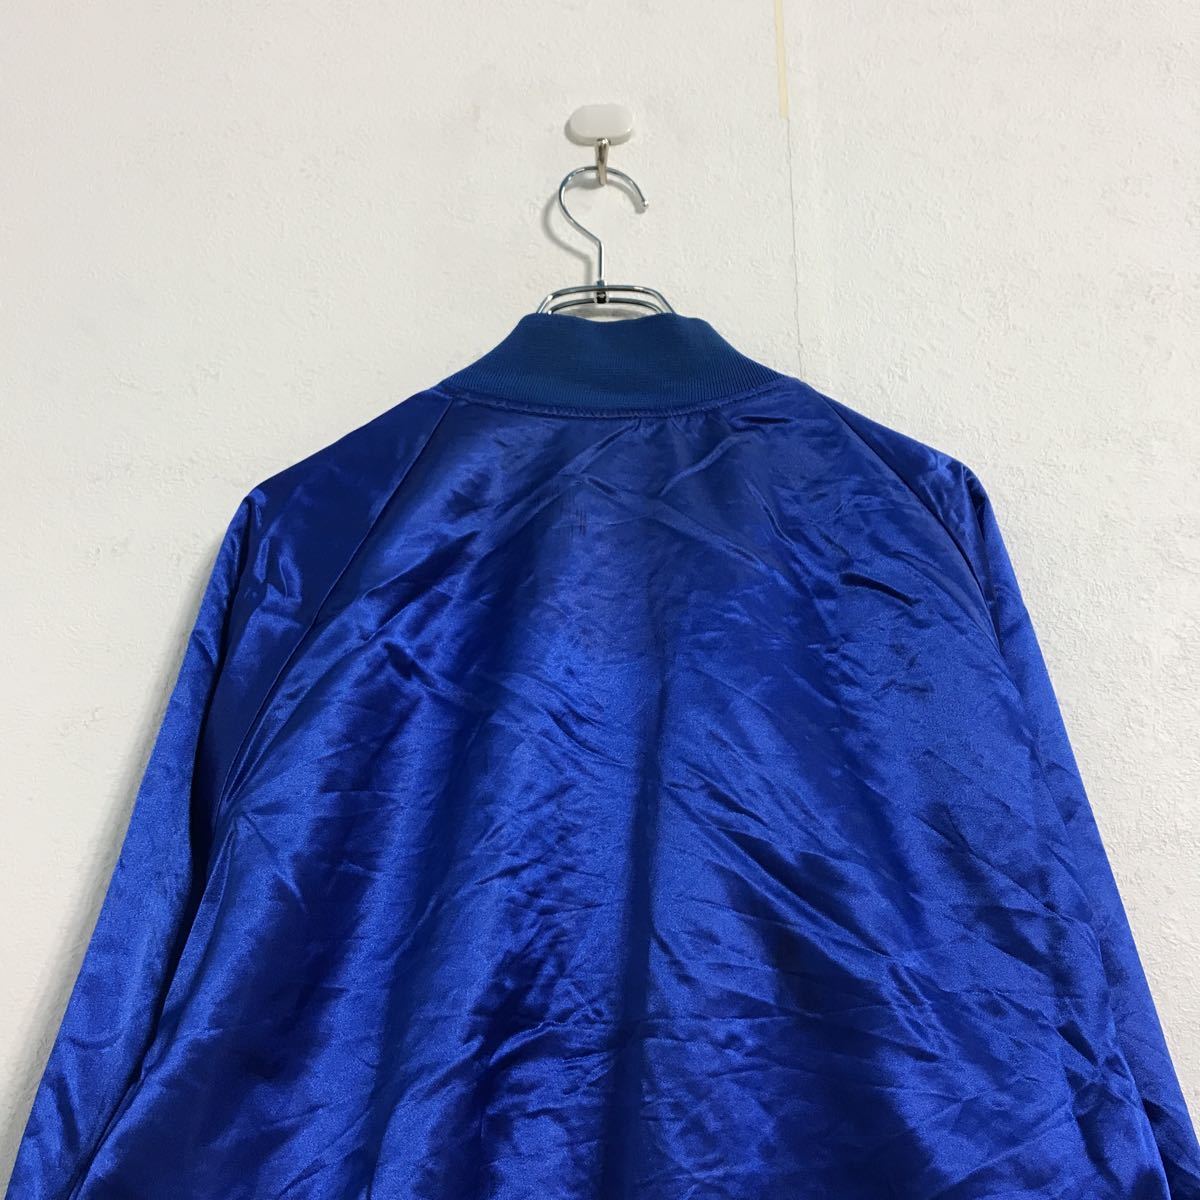  б/у б/у одежда CLUB21 нейлон куртка M голубой куртка с логотипом б/у одежда . America скупка a509-5701